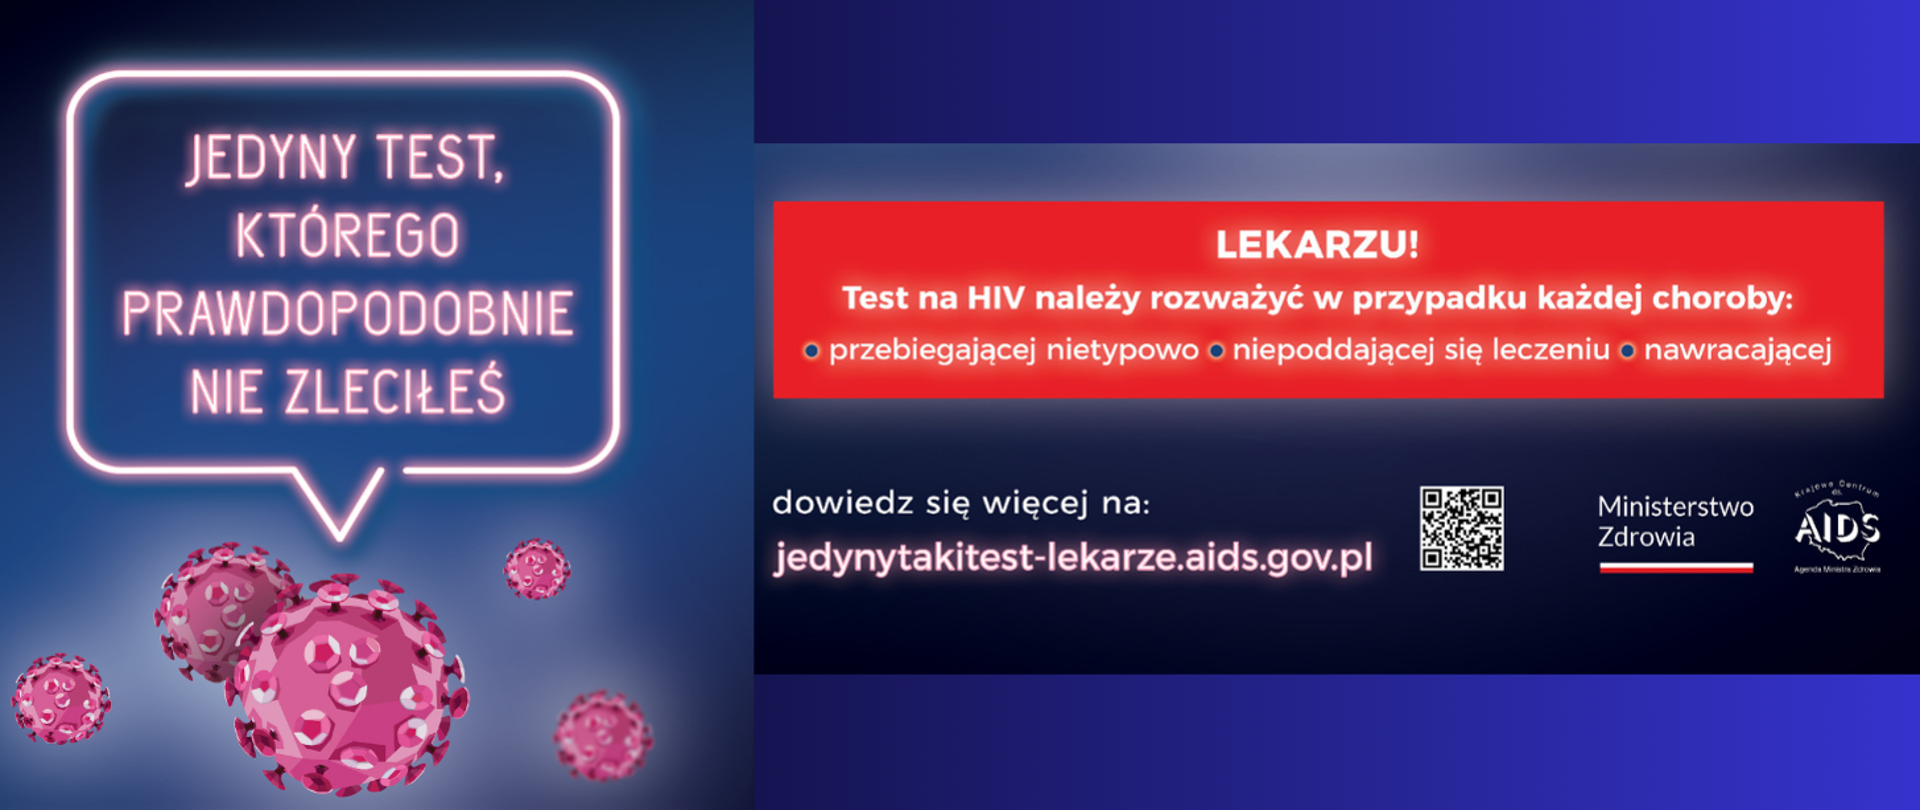 Na grafice jest napisane: Jedyny taki test, którego prawdopodobnie nie zleciłeś. Lekarzu! Test HIV należy rozważyć w przypadku każdej choroby przebiegającej nietypowo, niepoddającej się leczeniu, nawracającej. Dowiedz się więcej na jedynytakitest-lekarze.aids.gov.pl. Obok znajduje się kod QR, napis Ministerstwo Zdrowia oraz logo Krajowego Centrum ds. AIDS. Tło jest granatowe.